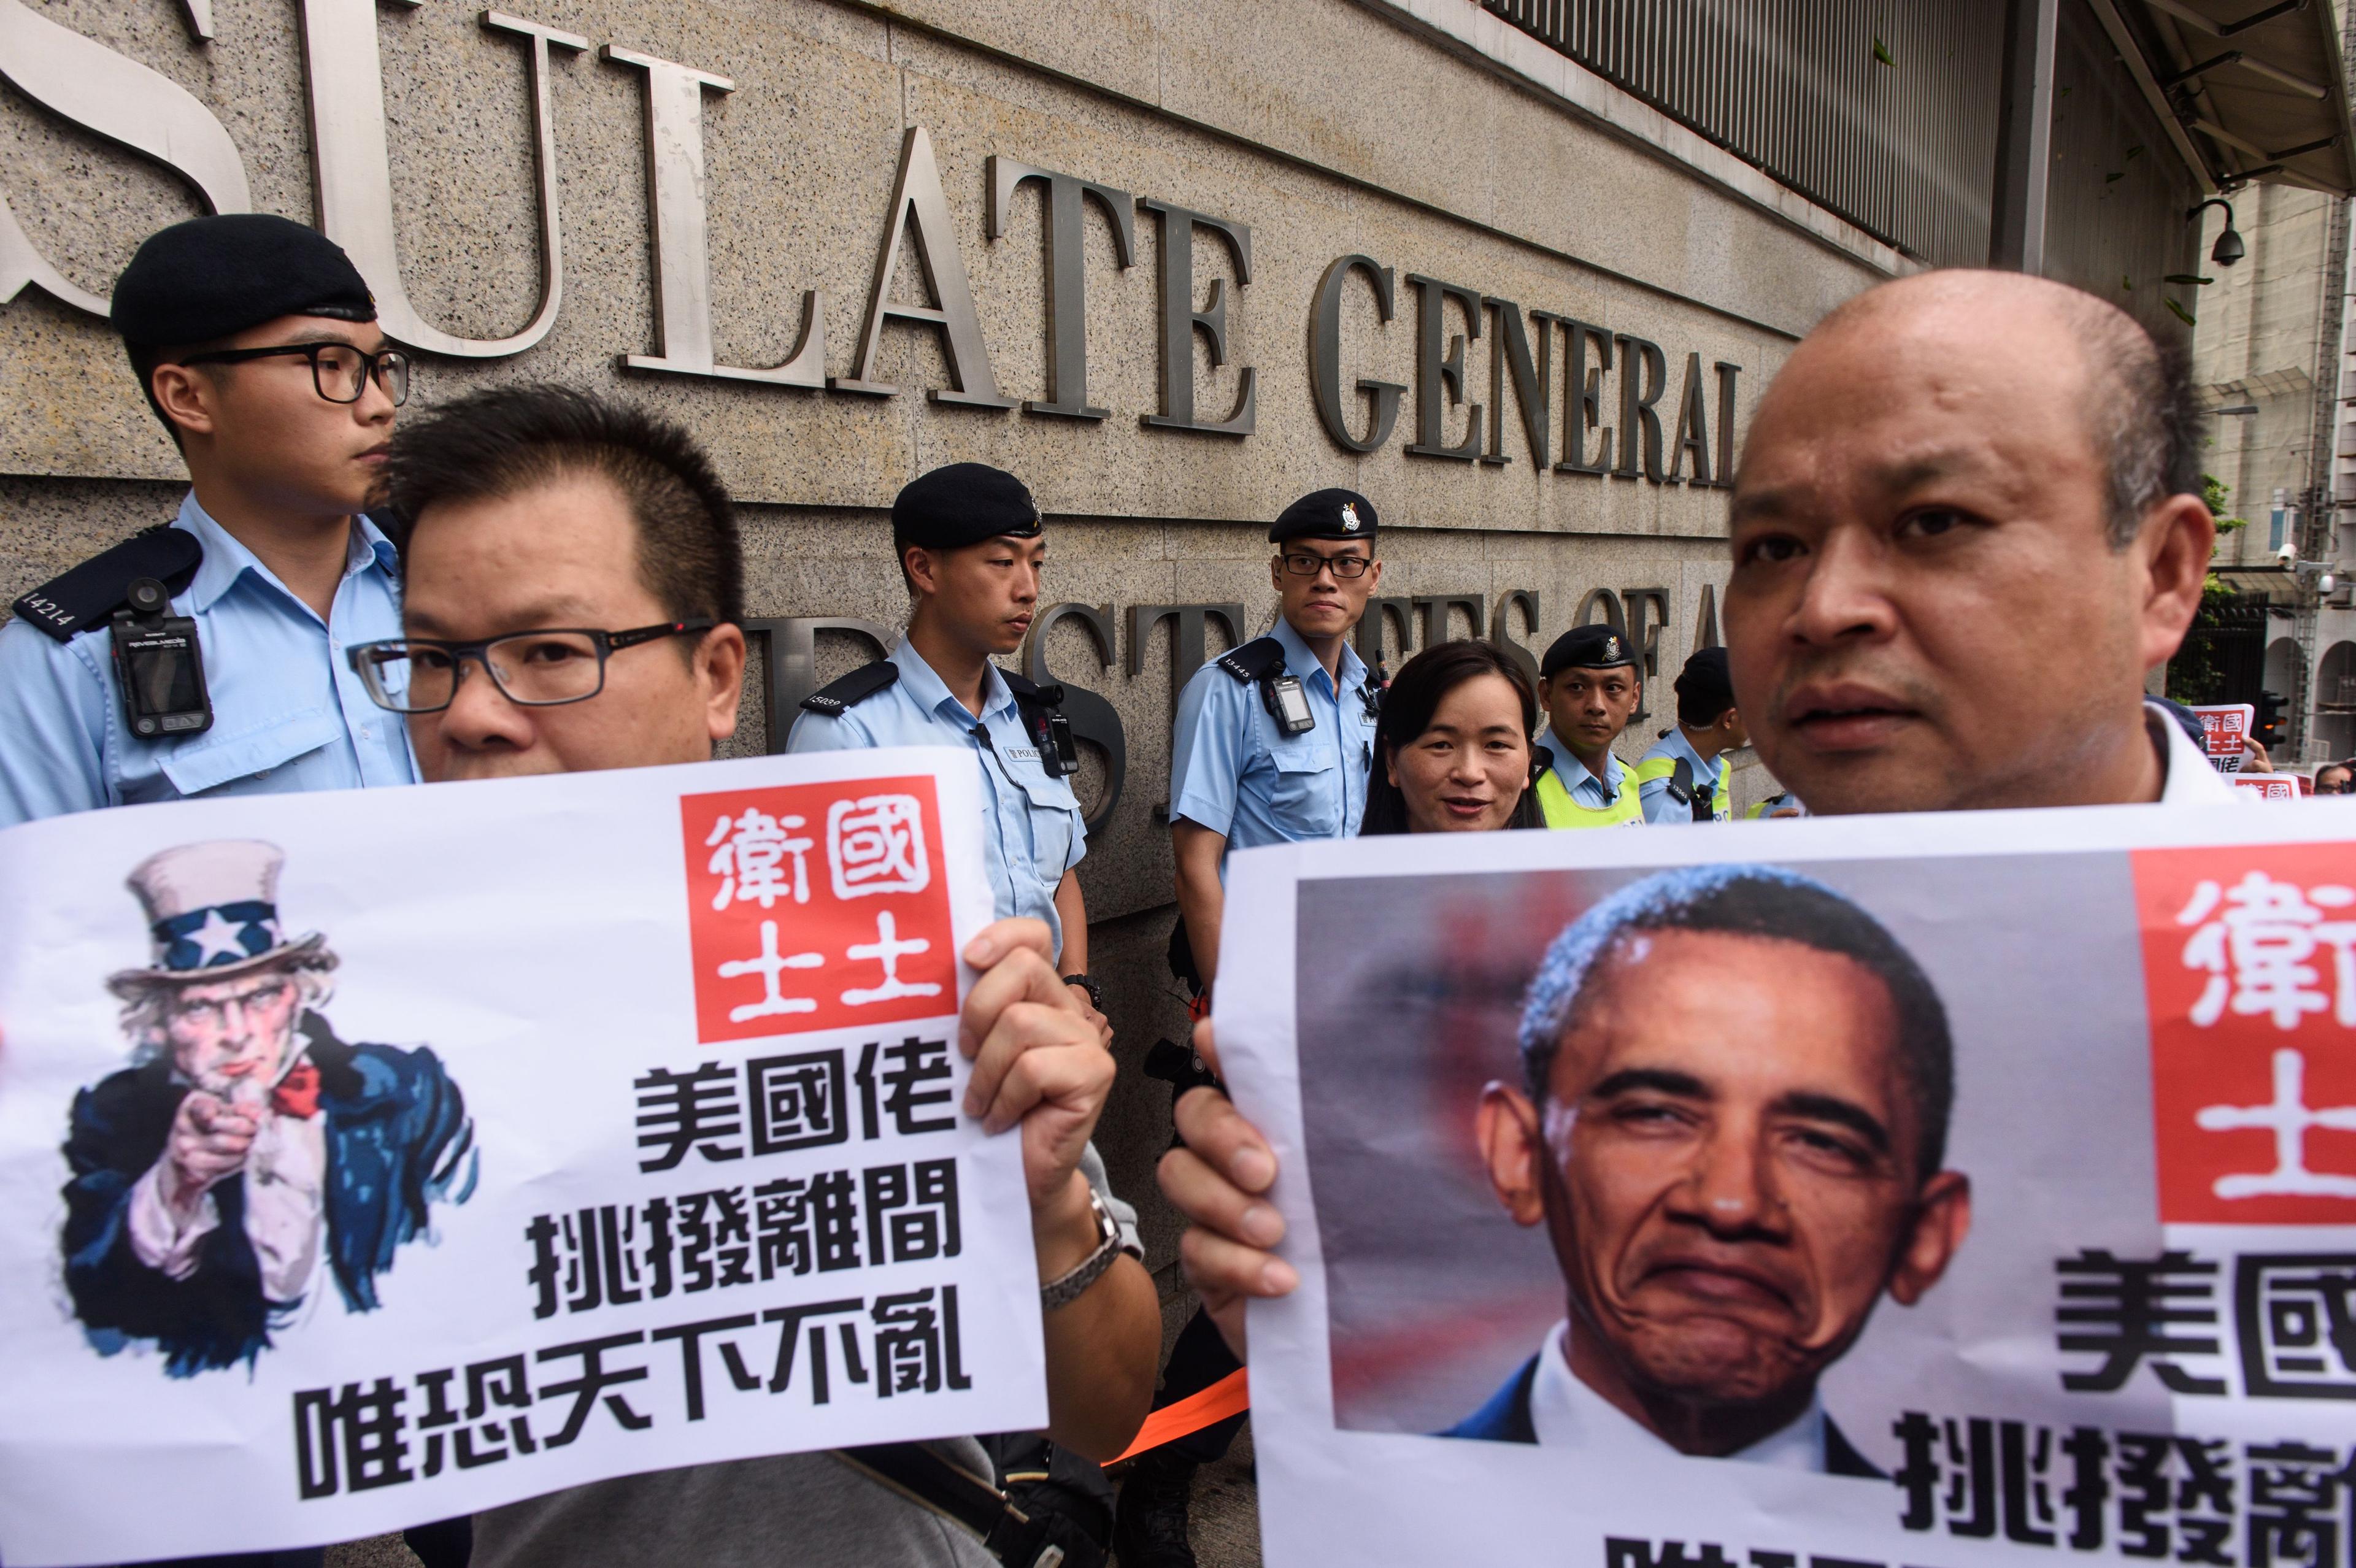 Prokinesiska demonstranter protesterar utanför USA:s konsulat i Hongkong efter domen om Sydkinesiska sjön i Permanenta skiljedomstolen i Haag.  (Foto: Anthony Wallace/AFP/Getty Images)